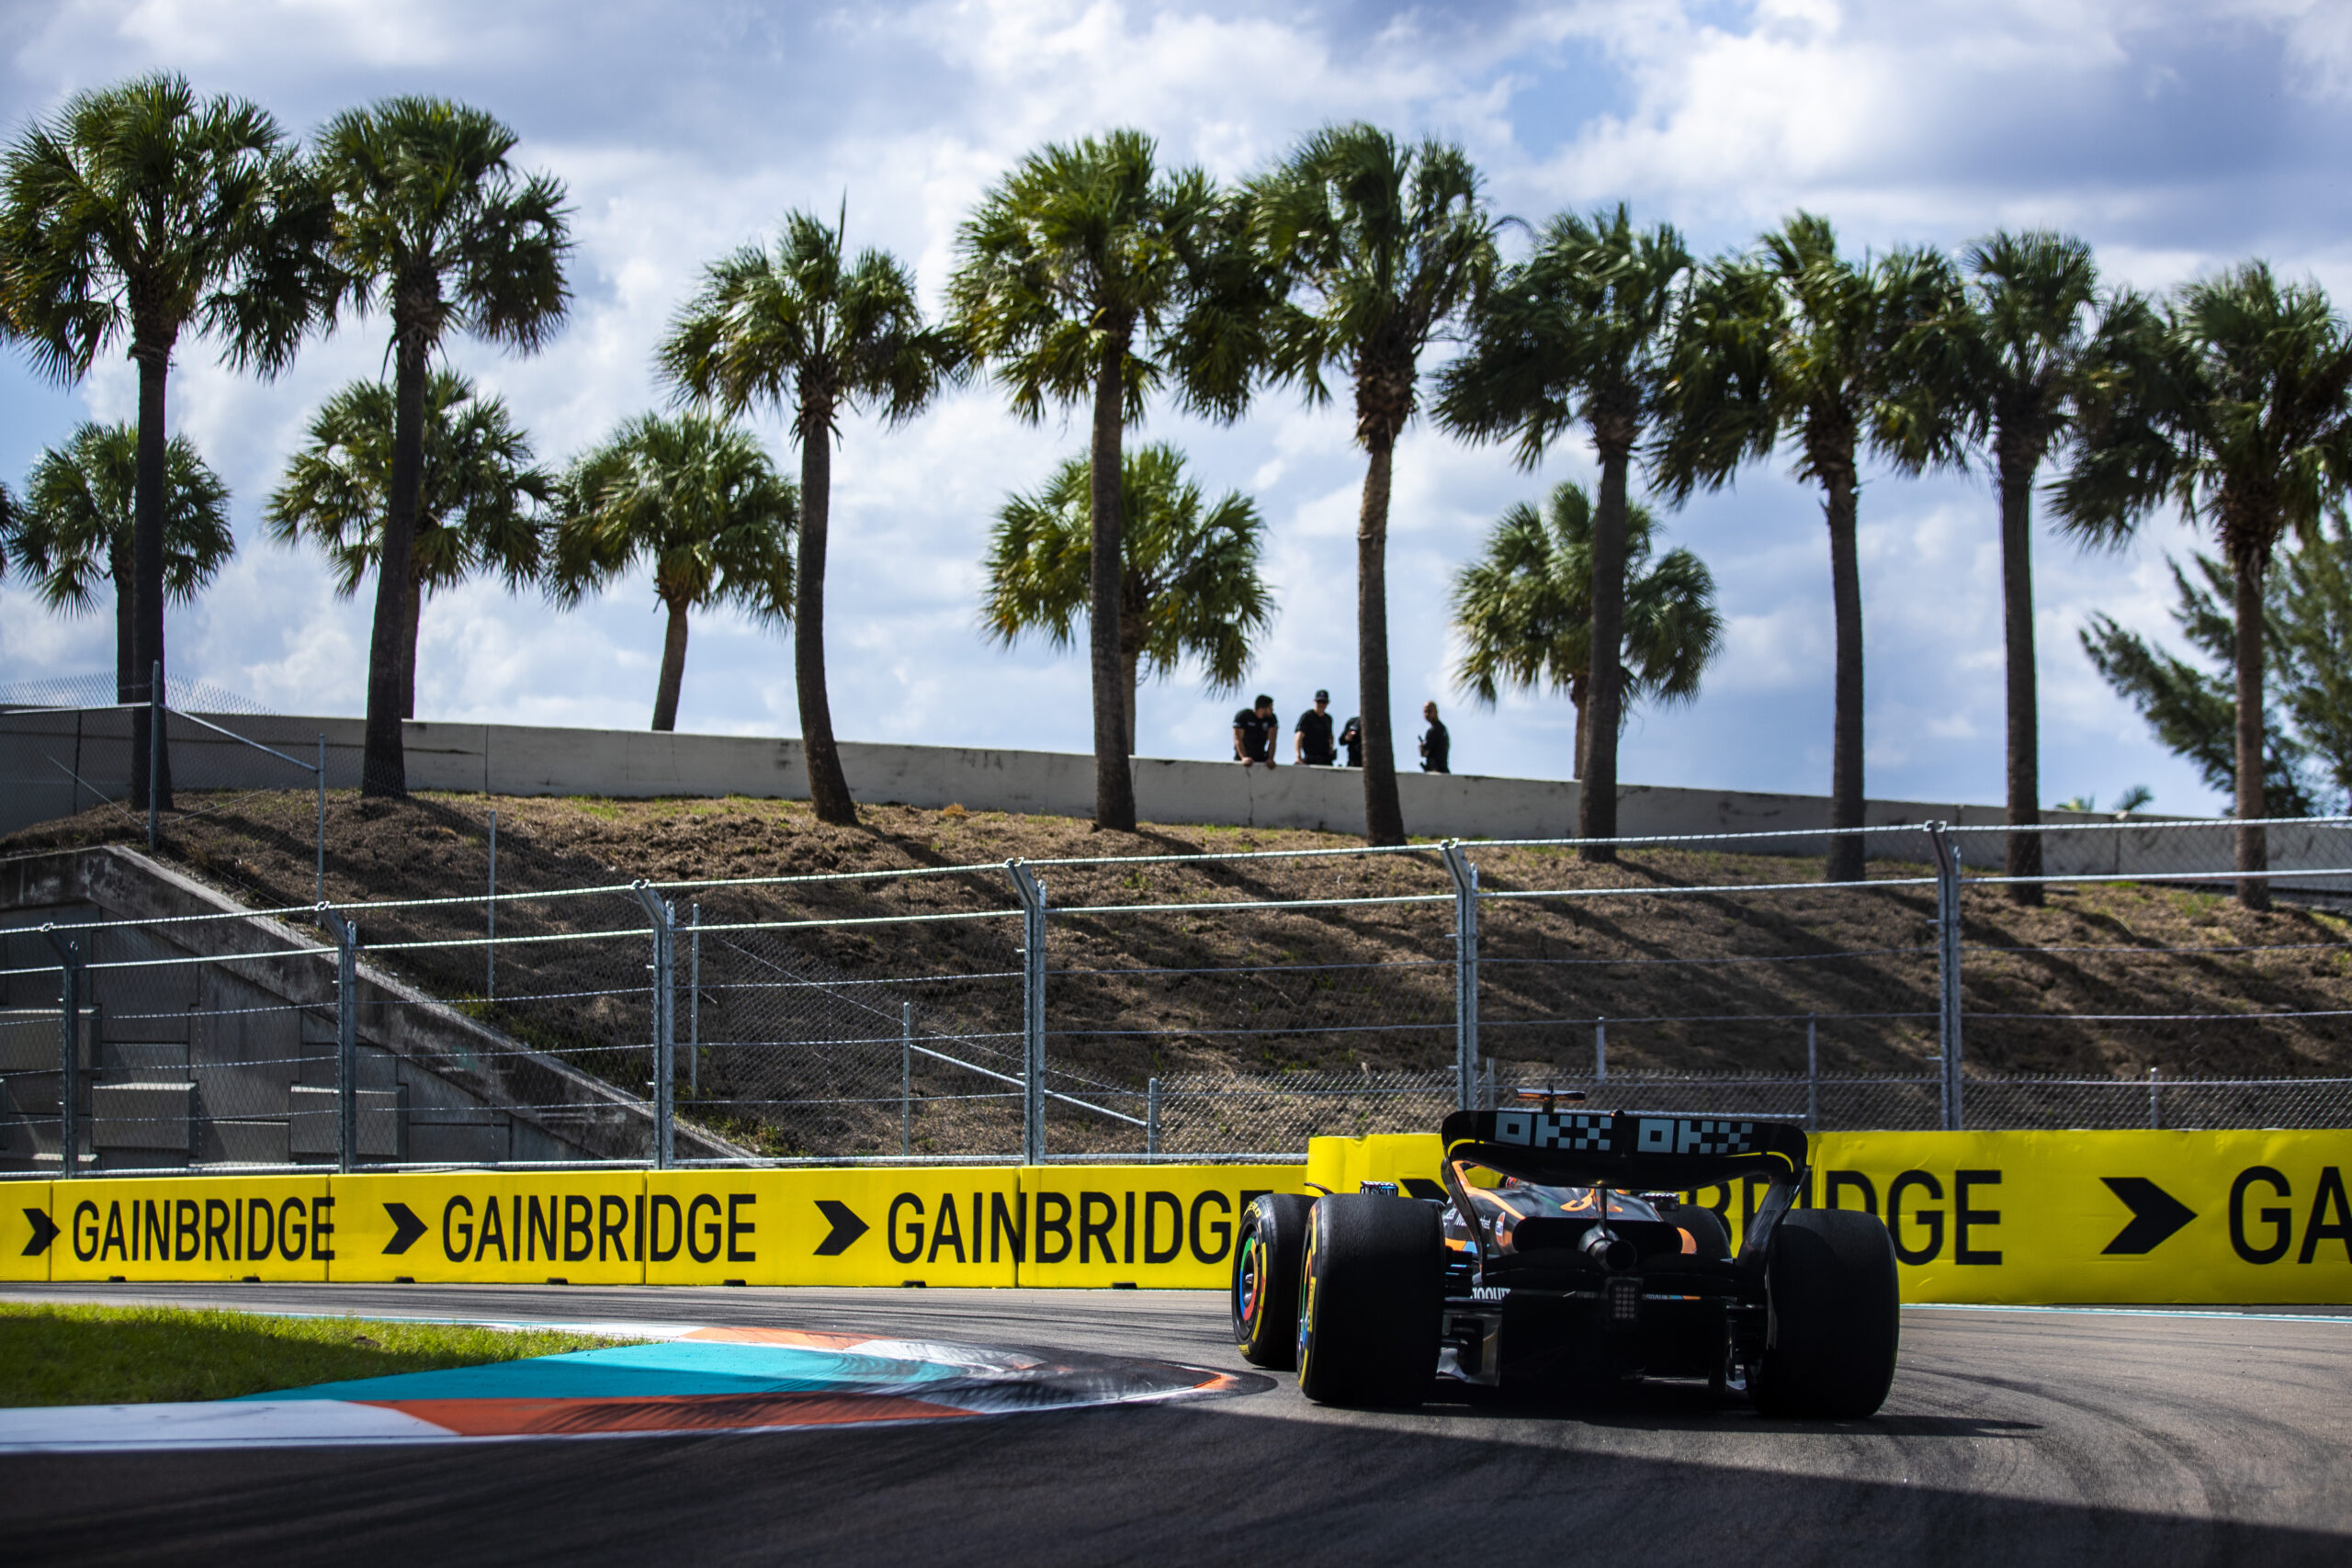 McLaren a connu un week-end de course difficile à Miami. Avec 0 point engrangé et un manque de rythme palpable, Lando Norris et Daniel Ricciardo ont encore beaucoup de travail s'ils veulent remonter dans la hiérarchie.